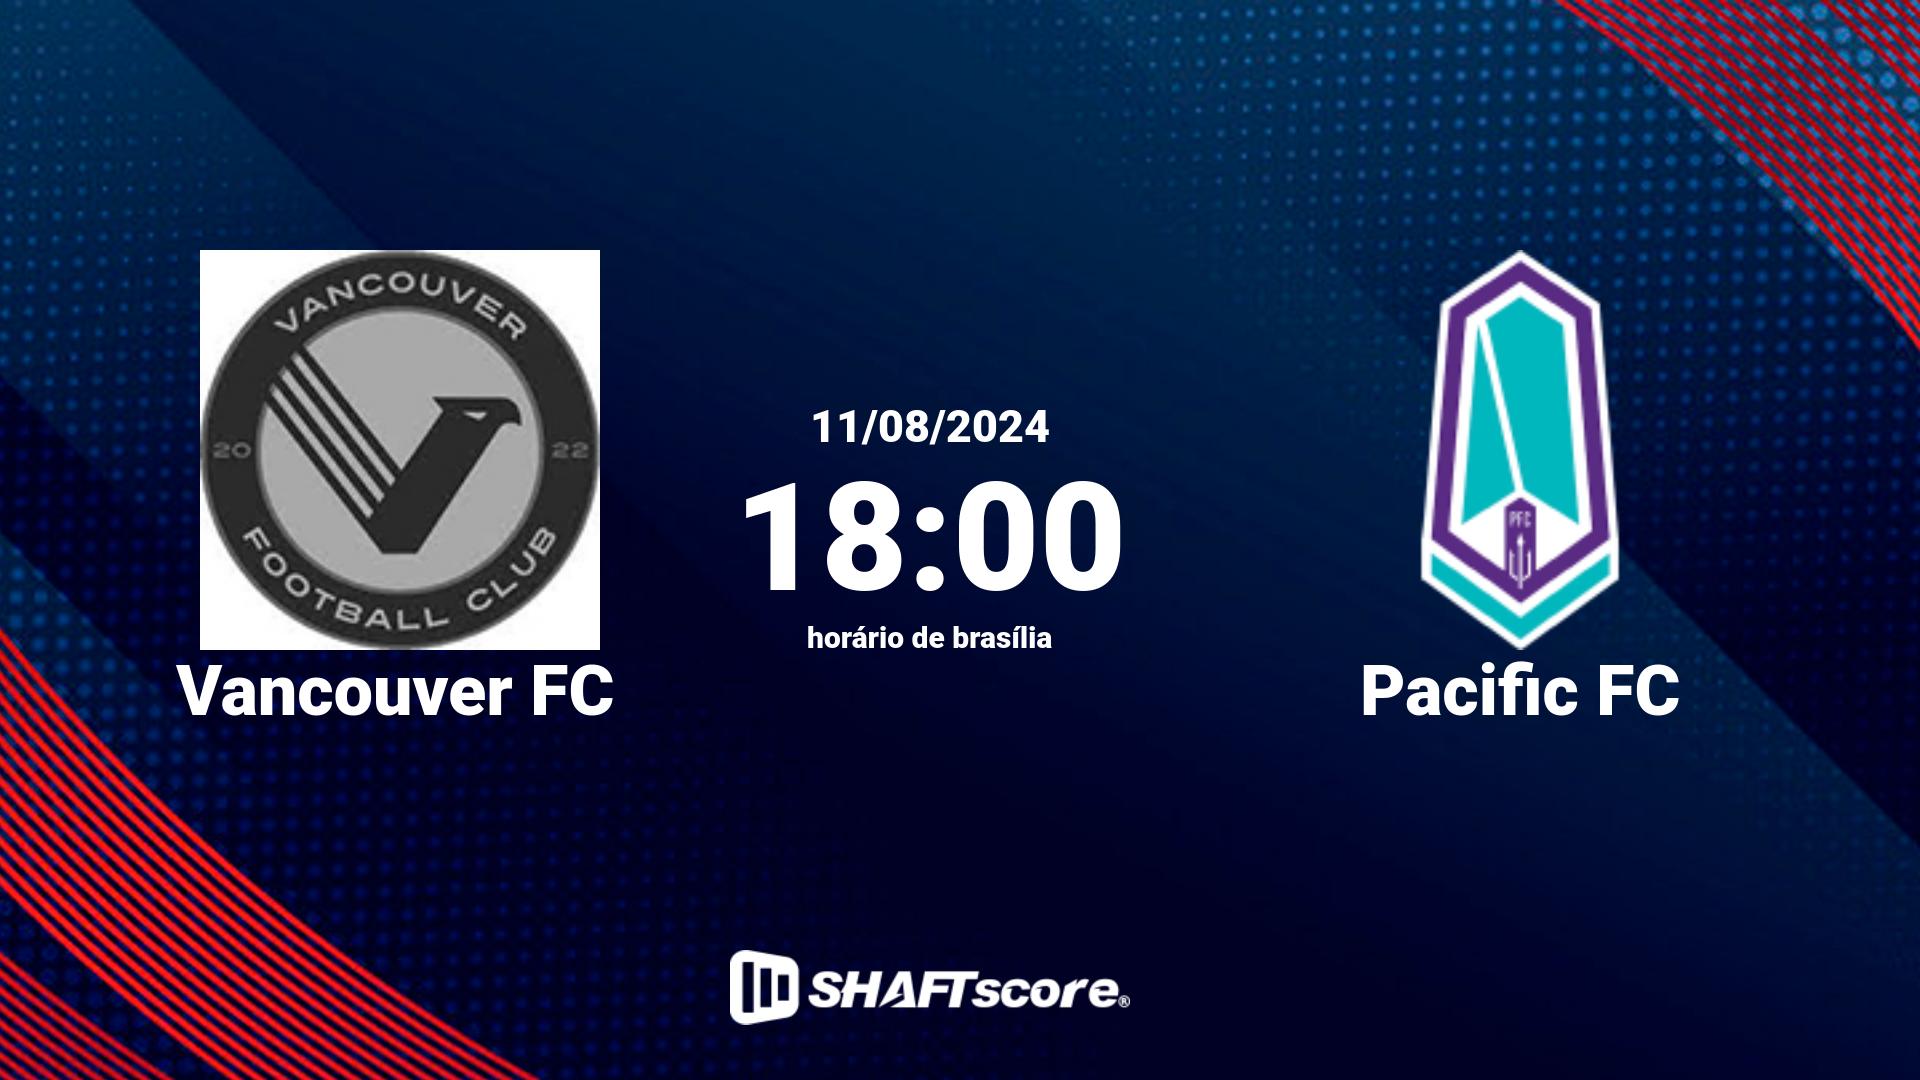 Estatísticas do jogo Vancouver FC vs Pacific FC 11.08 18:00